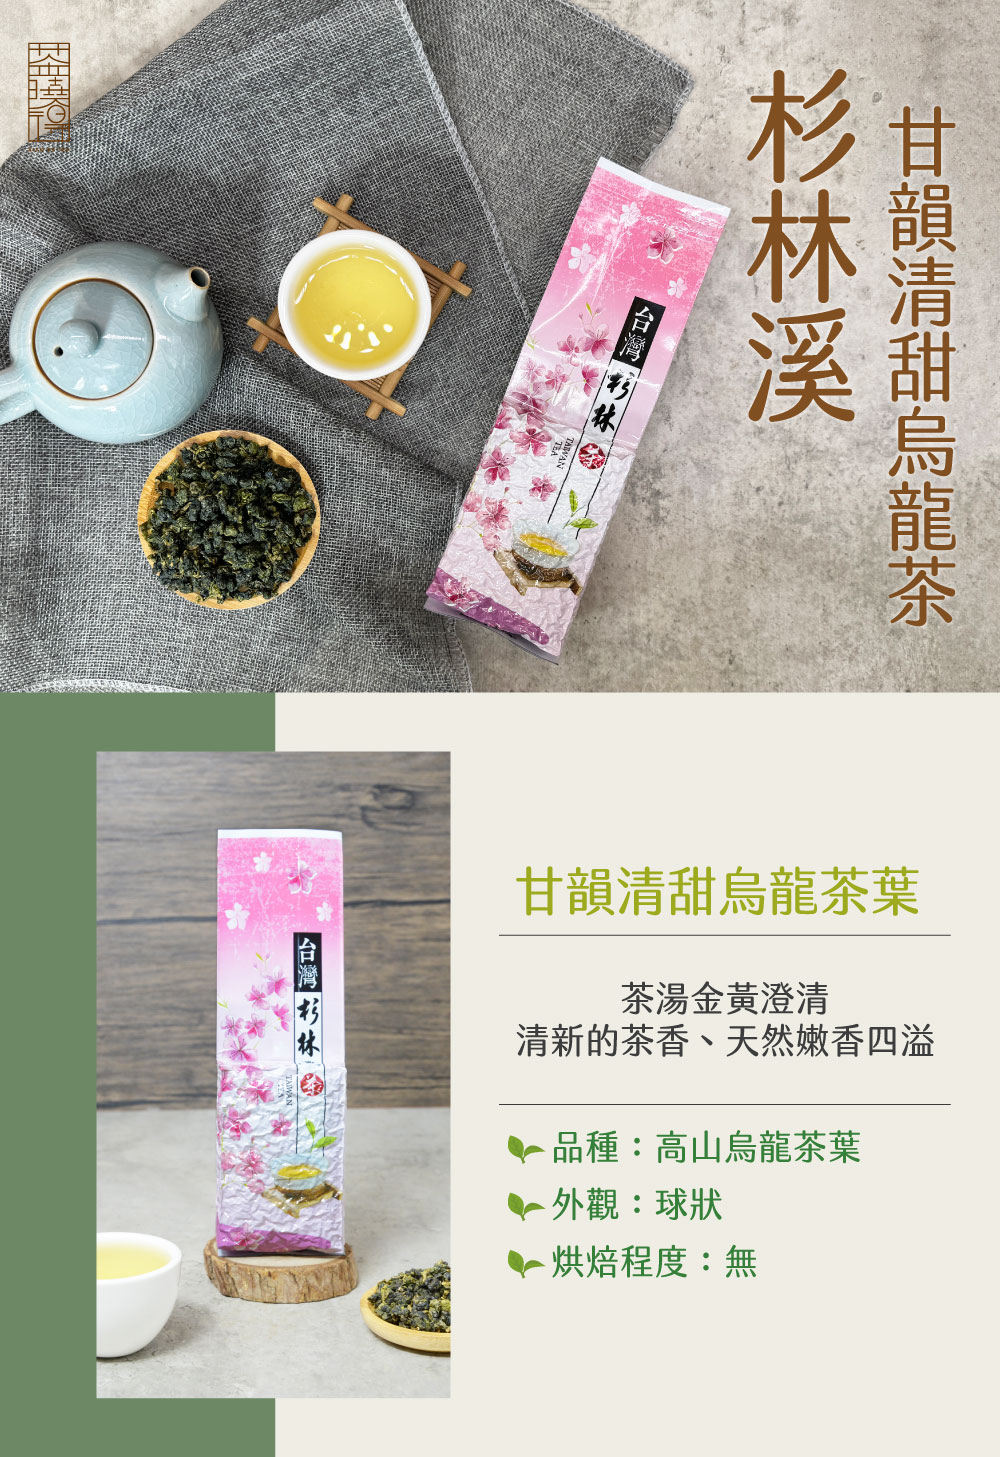 xiao de tea 茶曉得 杉林溪甘韻清甜烏龍茶(150